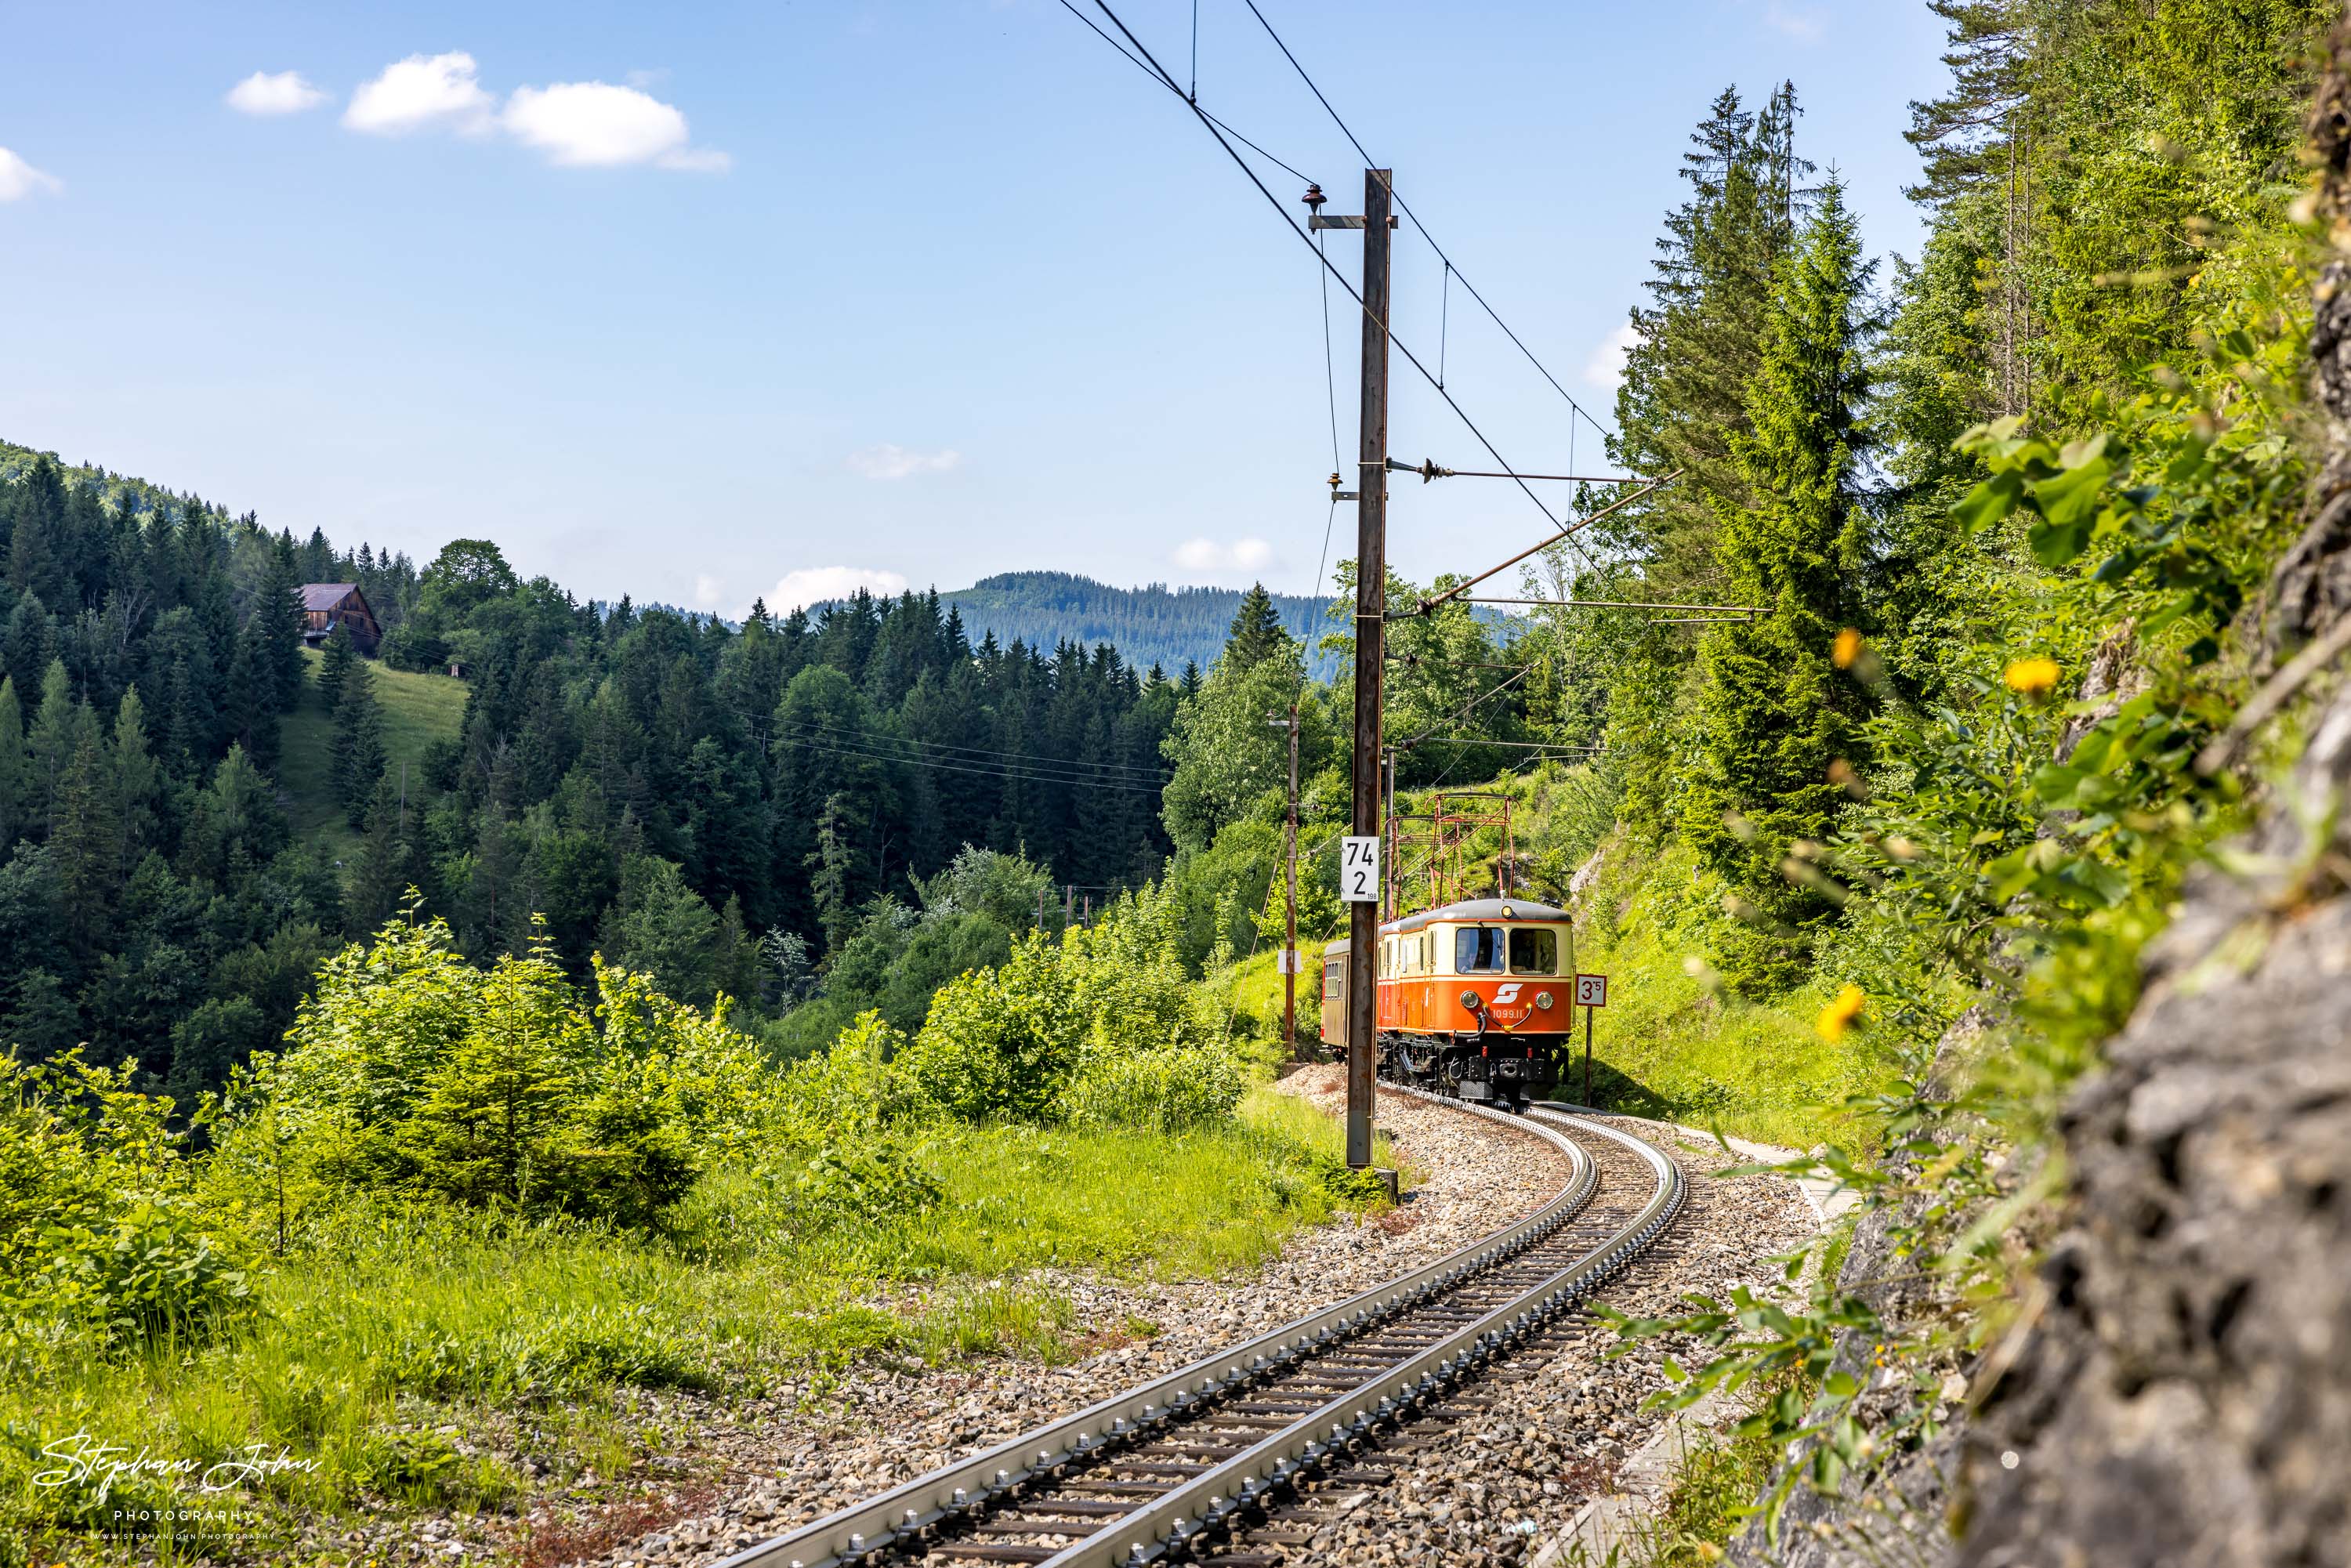 Zug 80965 mit Lok 1099.11 und 1099.14 nach Mariazell zwischen dem Bahnhof Wienerbruck-Josefsberg und Erlaufklause